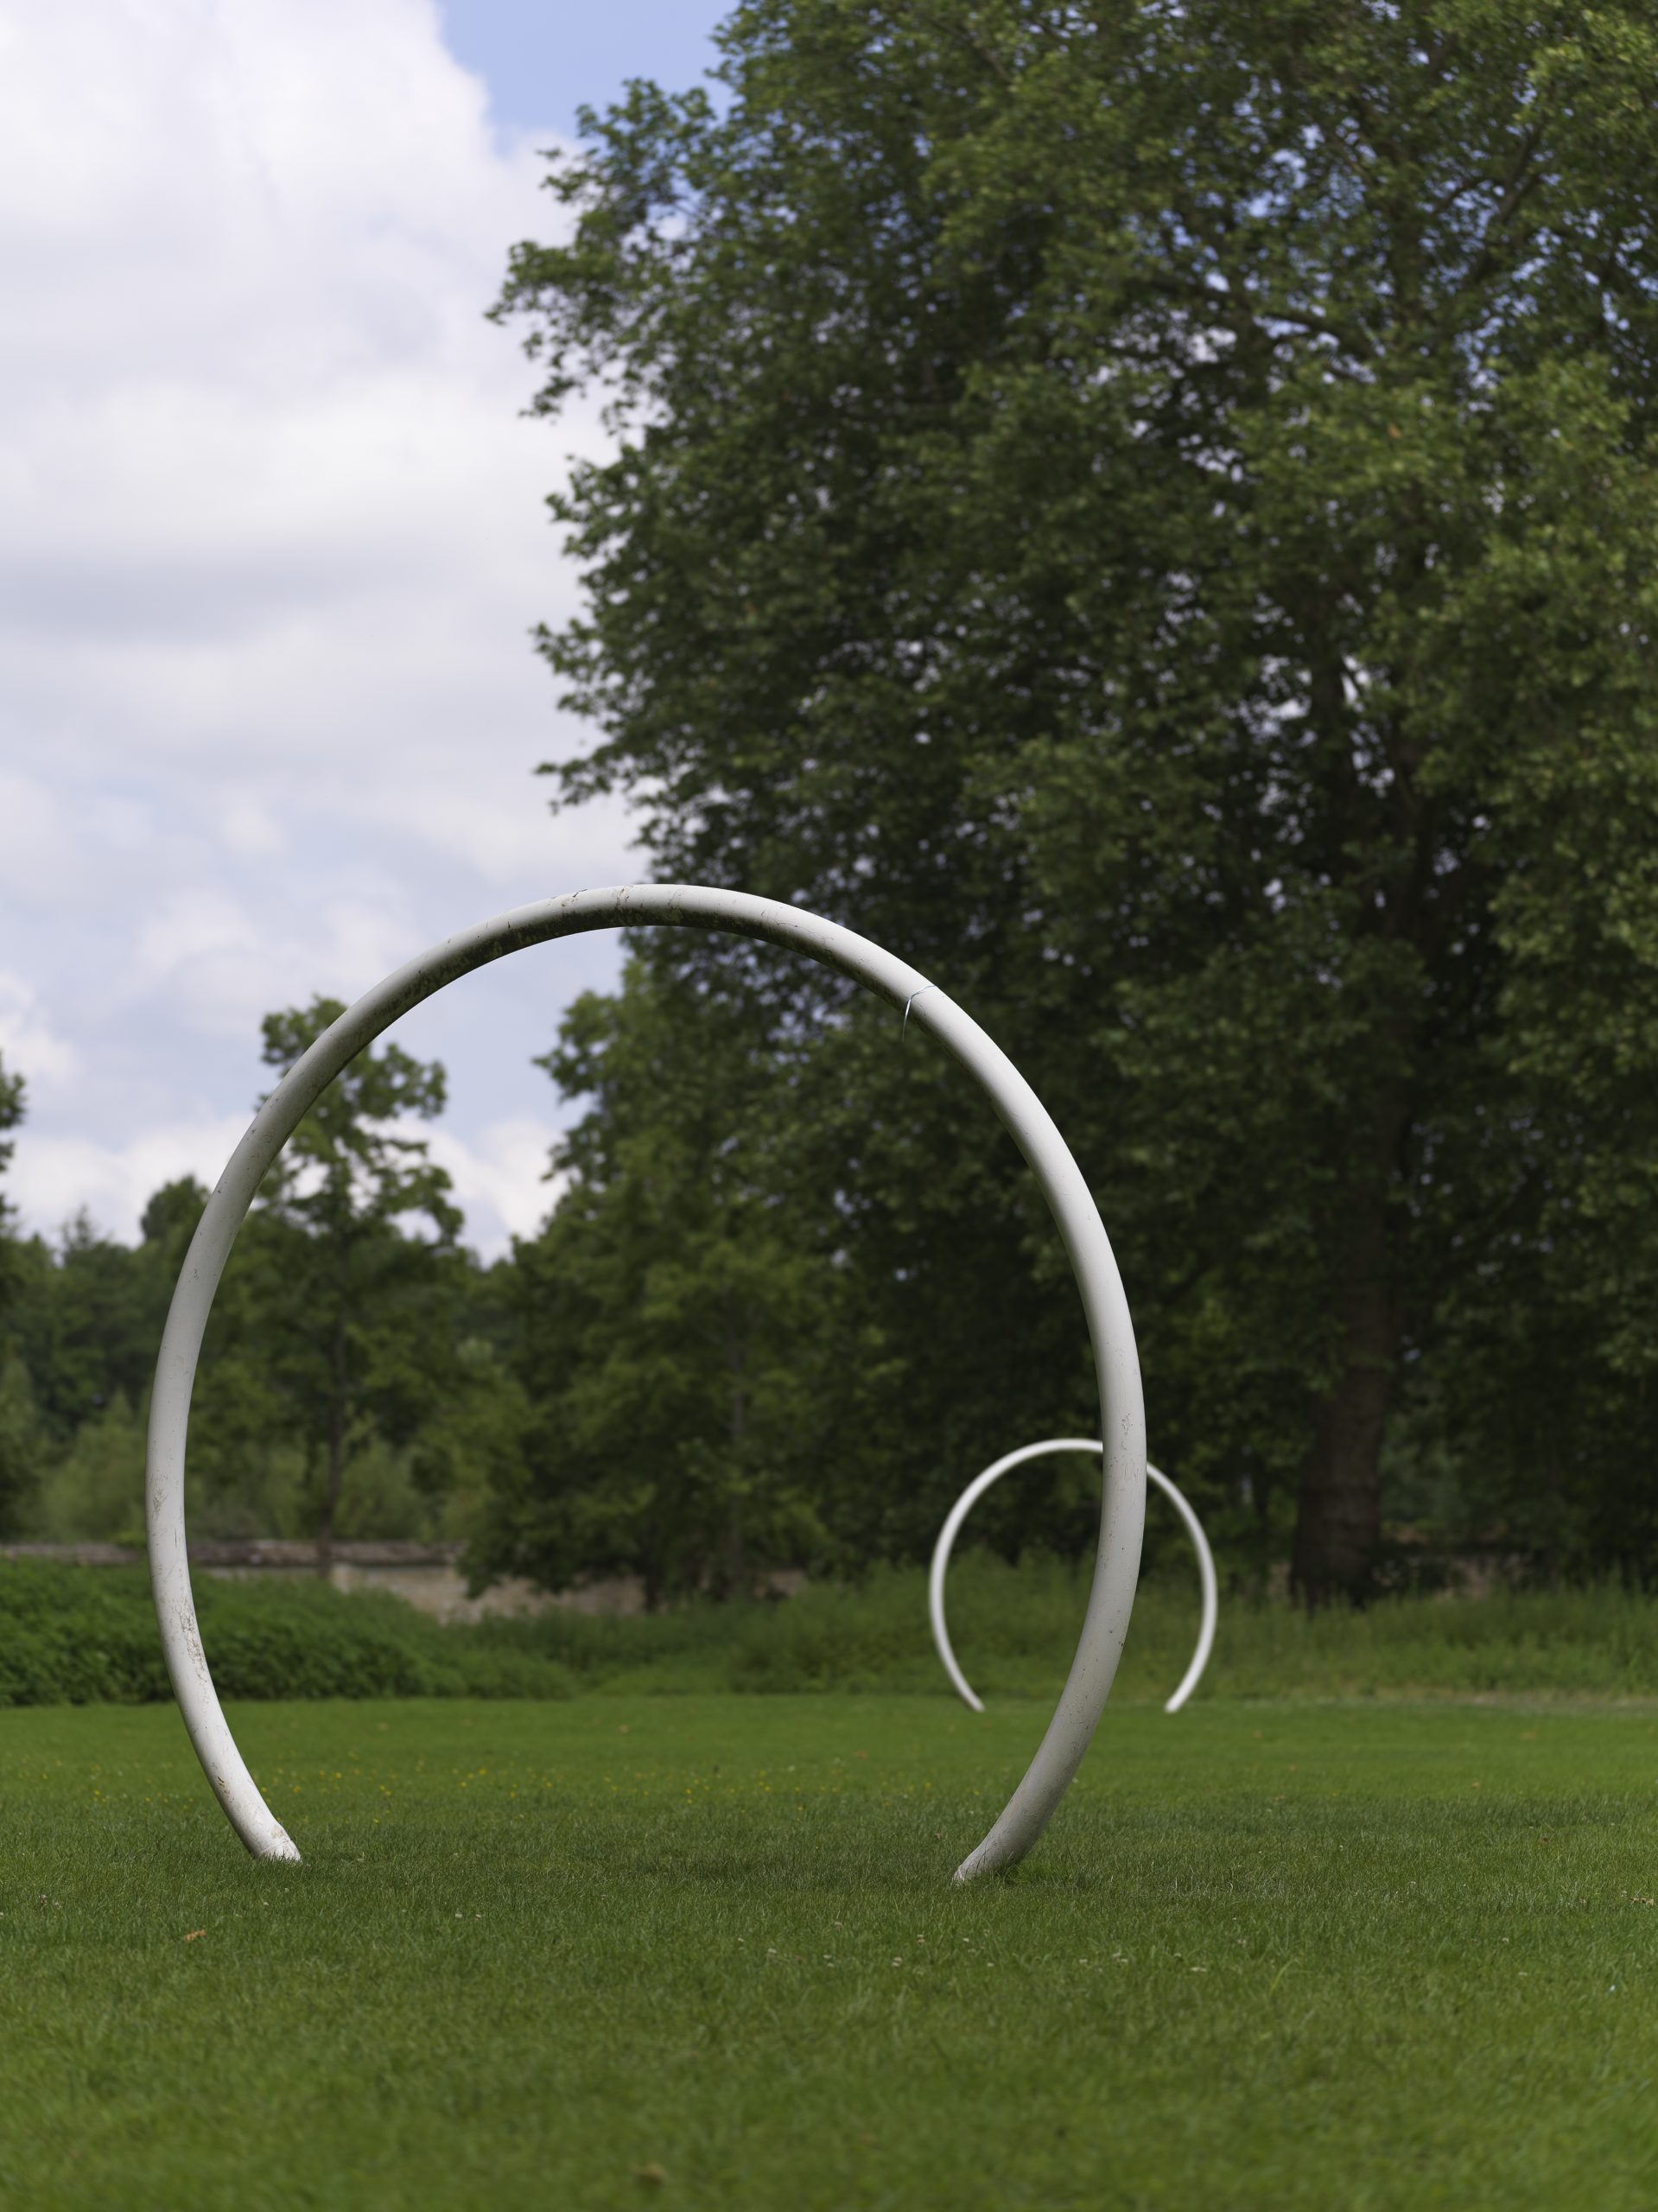 deux grands arcs de cercle blanc disposés dans un jardin